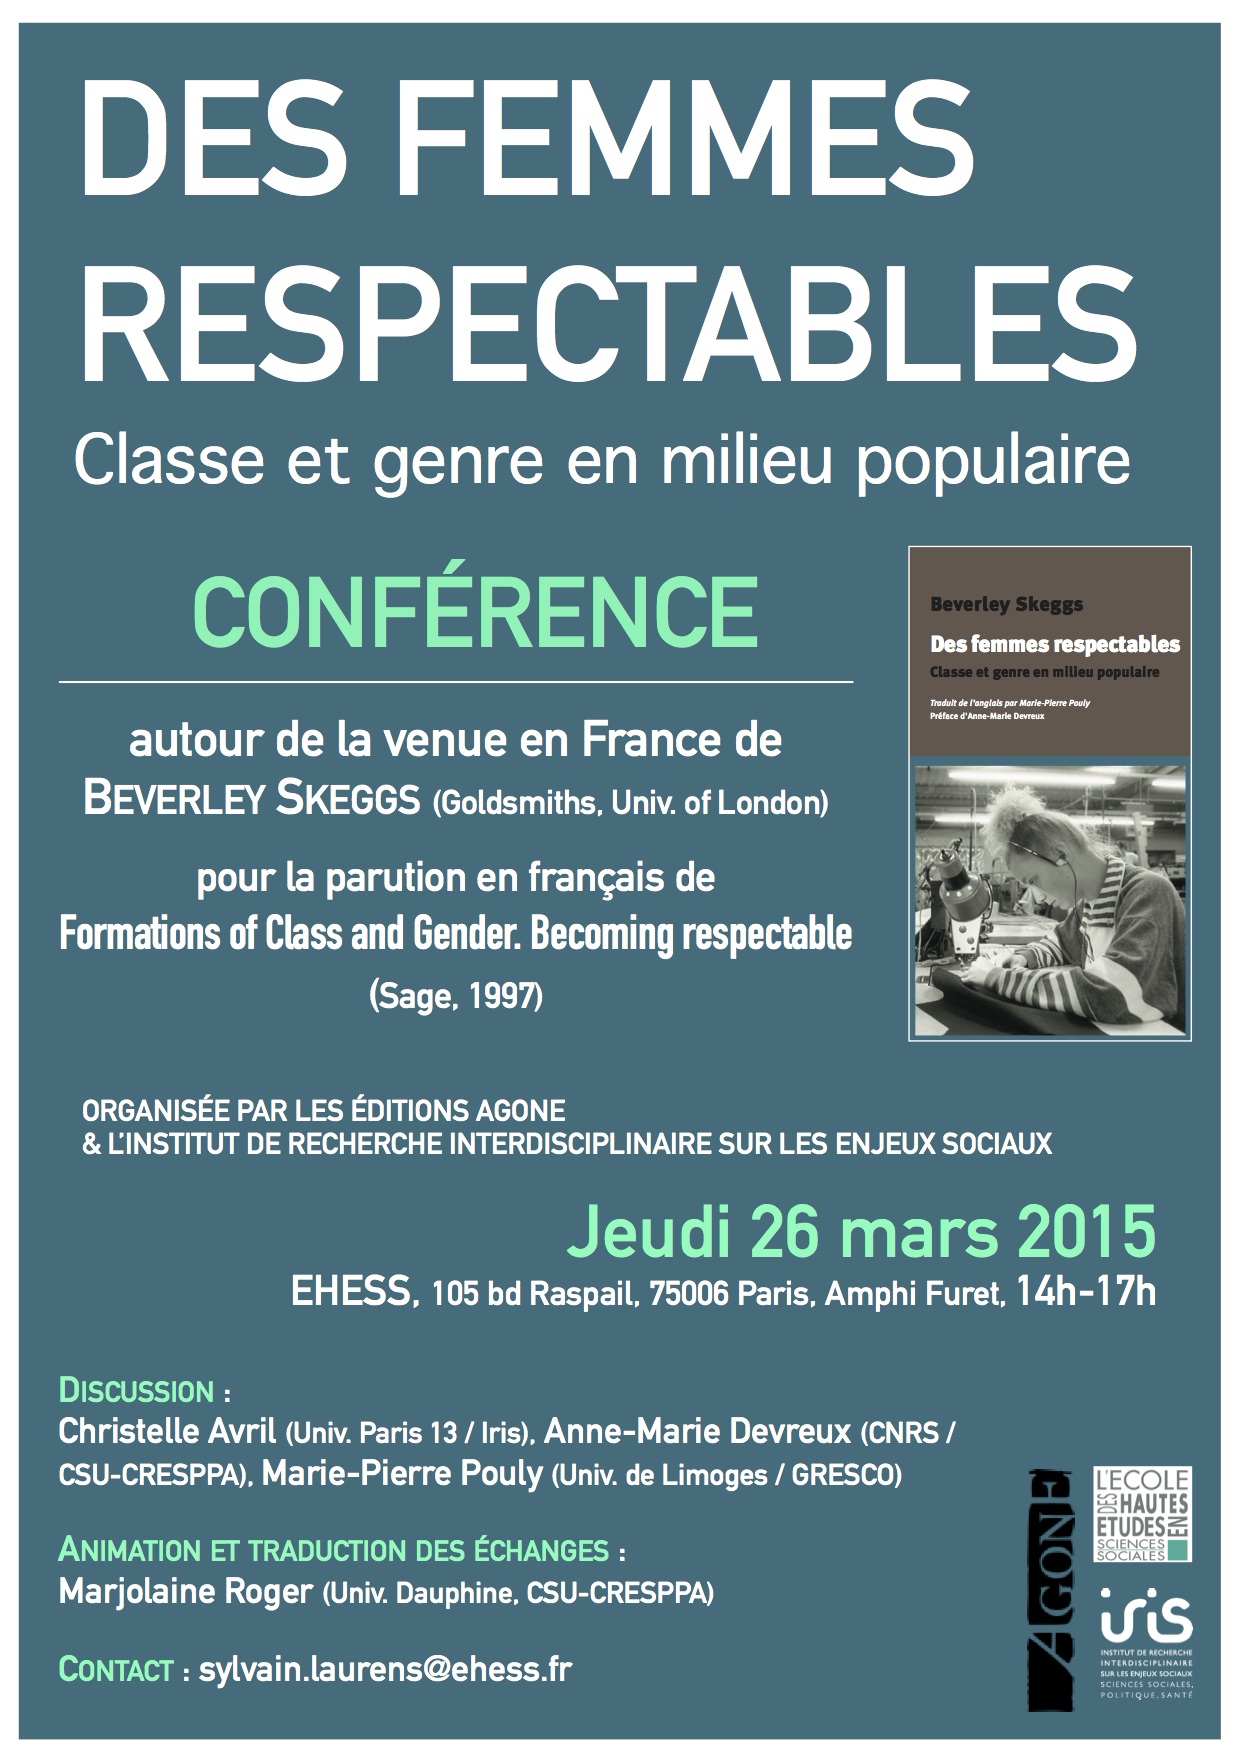 Des femmes respectables > conférence de Beverley Skeggs, 26 mars 2015